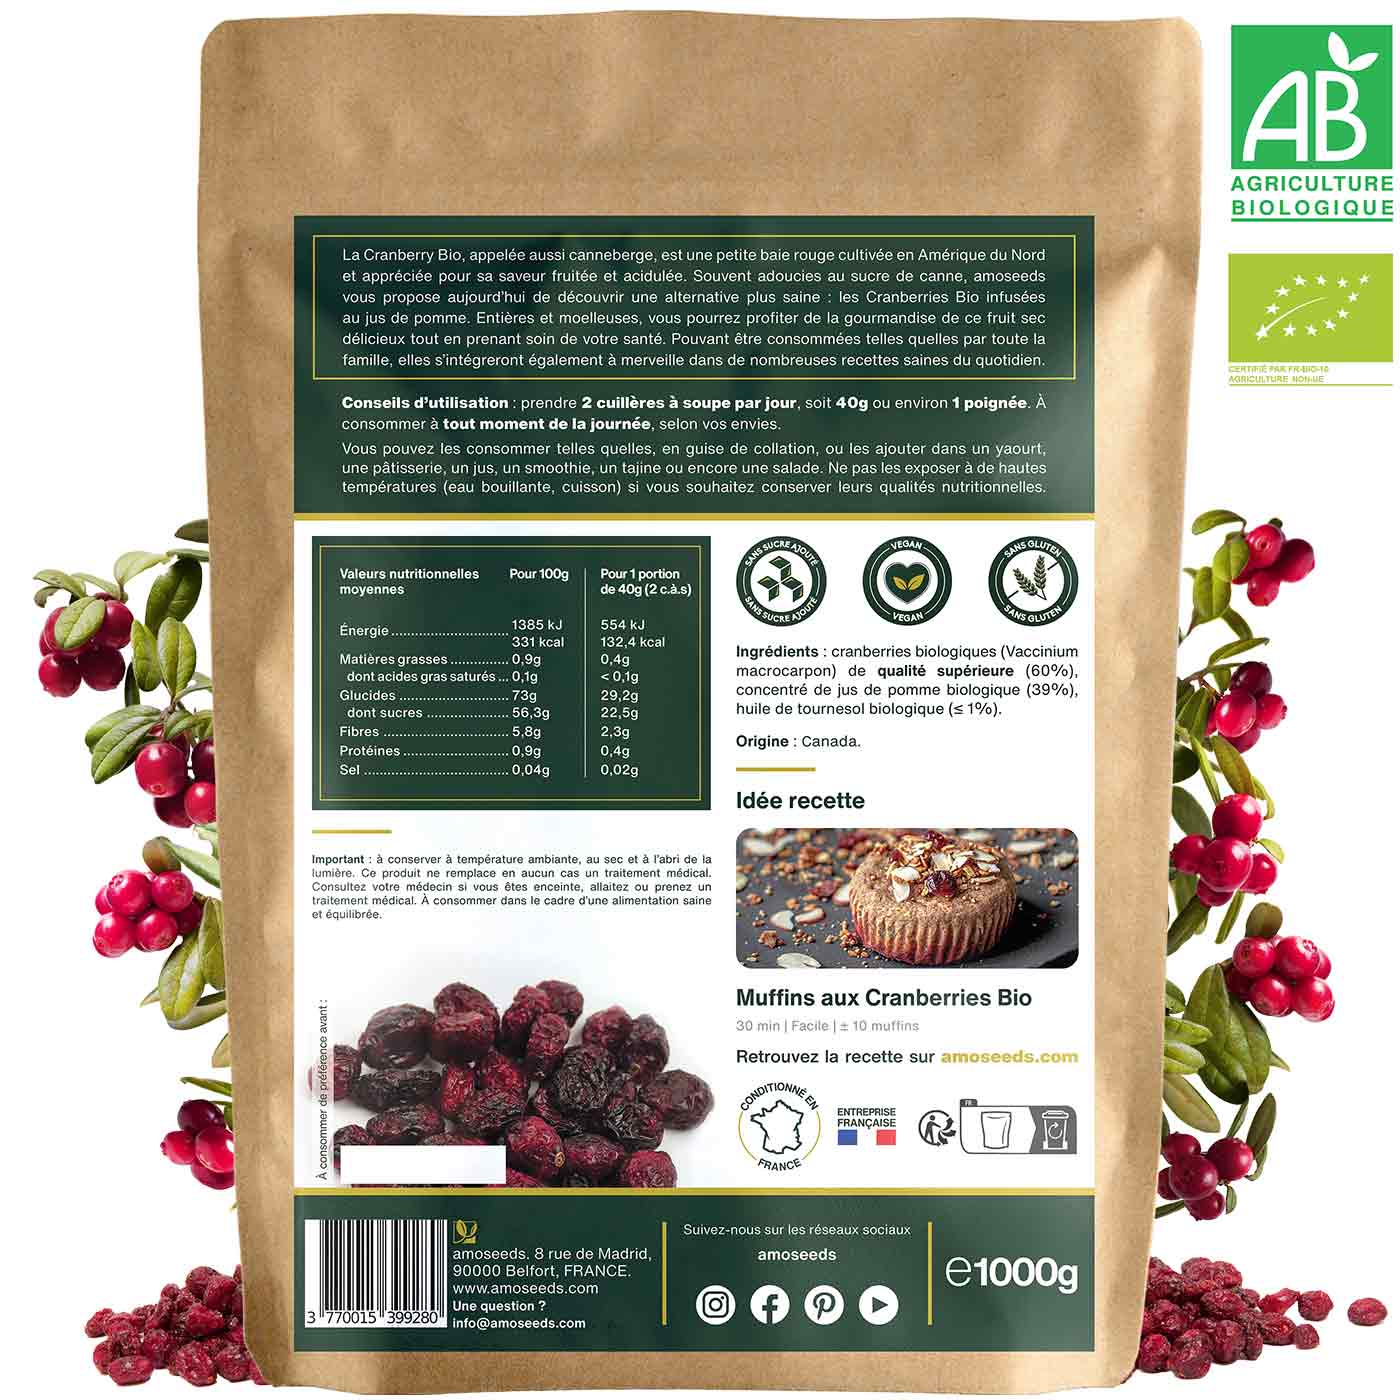 Cranberries Entières Bio 1KG amoseeds specialiste des super aliments Bio